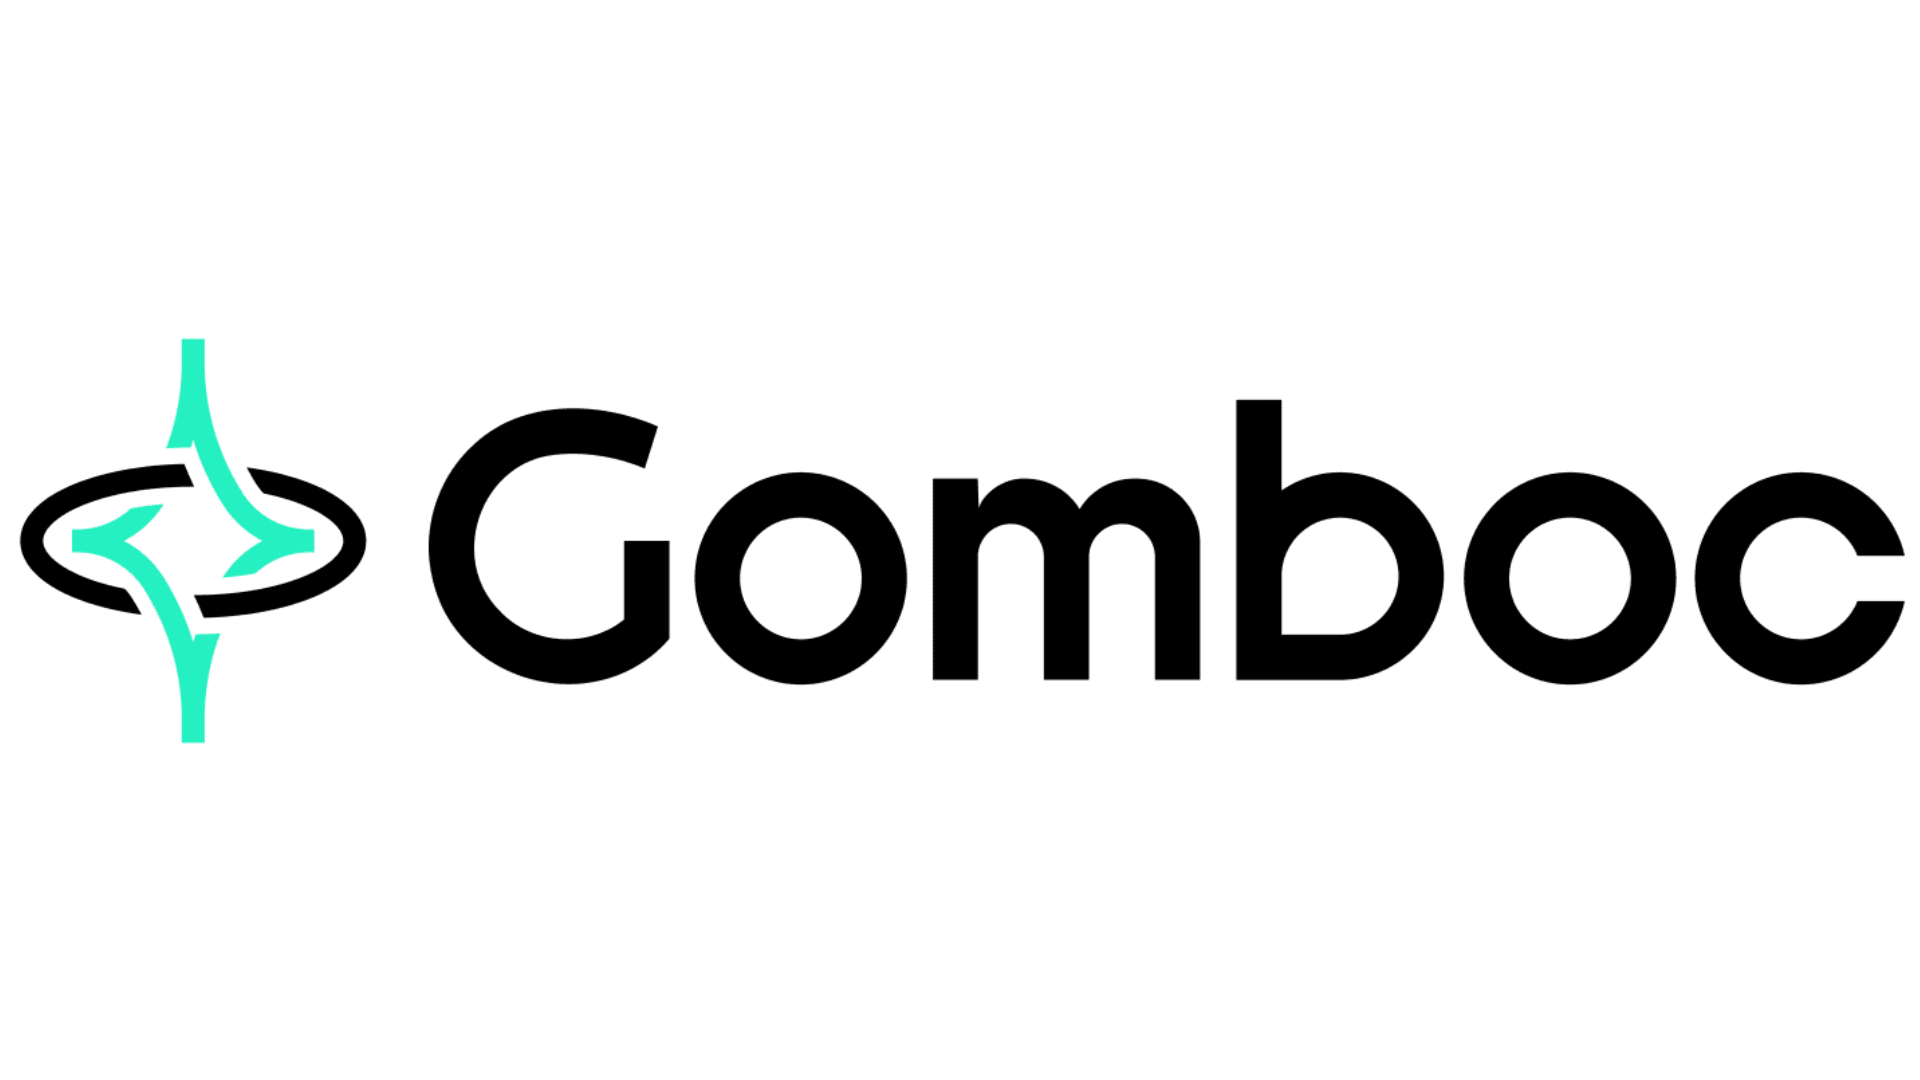 Gomboc logo